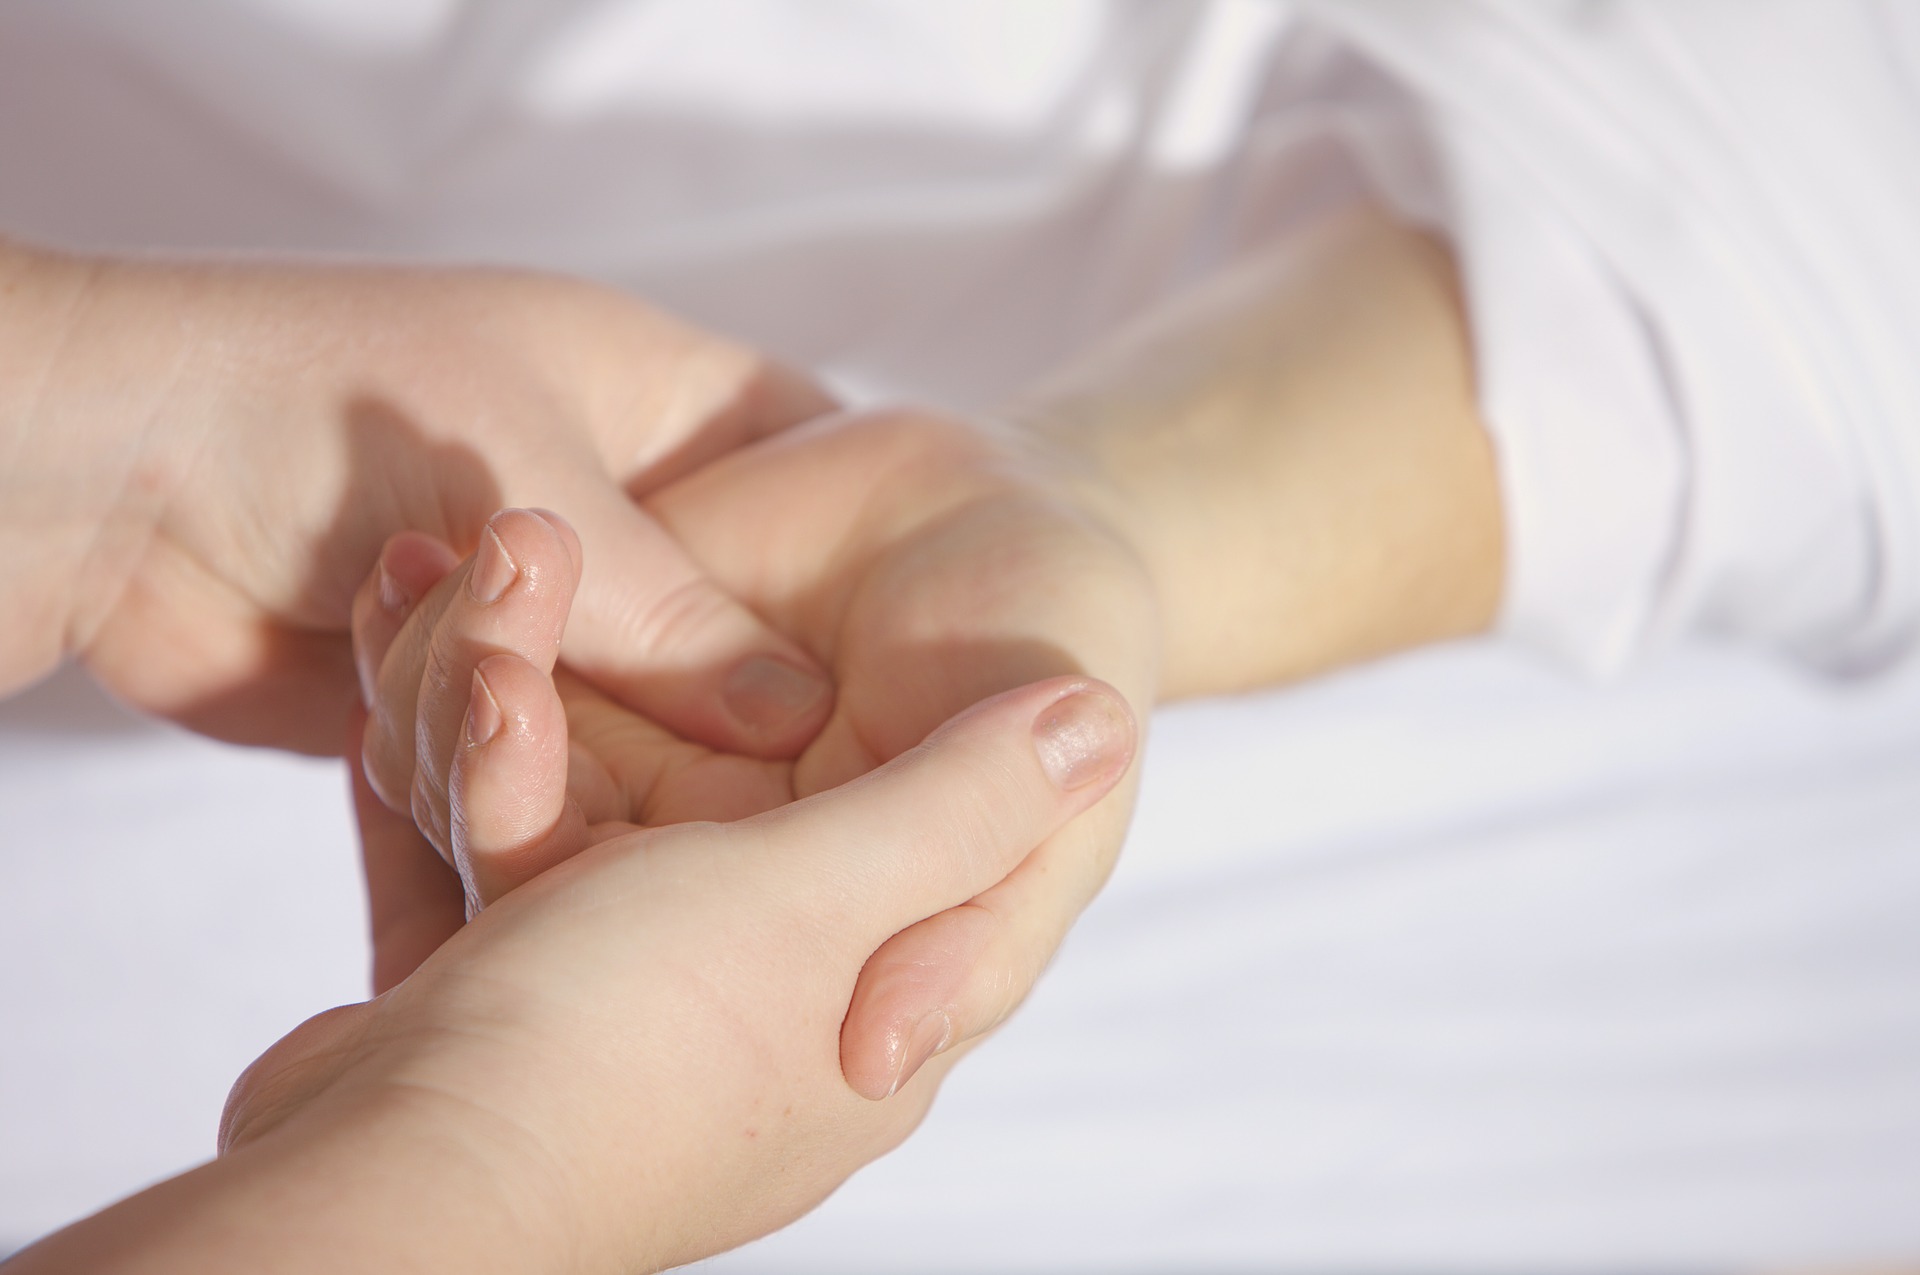 Hände, der Arzt hält - untersucht den Patienten. Bild zum thema: Die Nachsorge – Kontrolle und Pflege